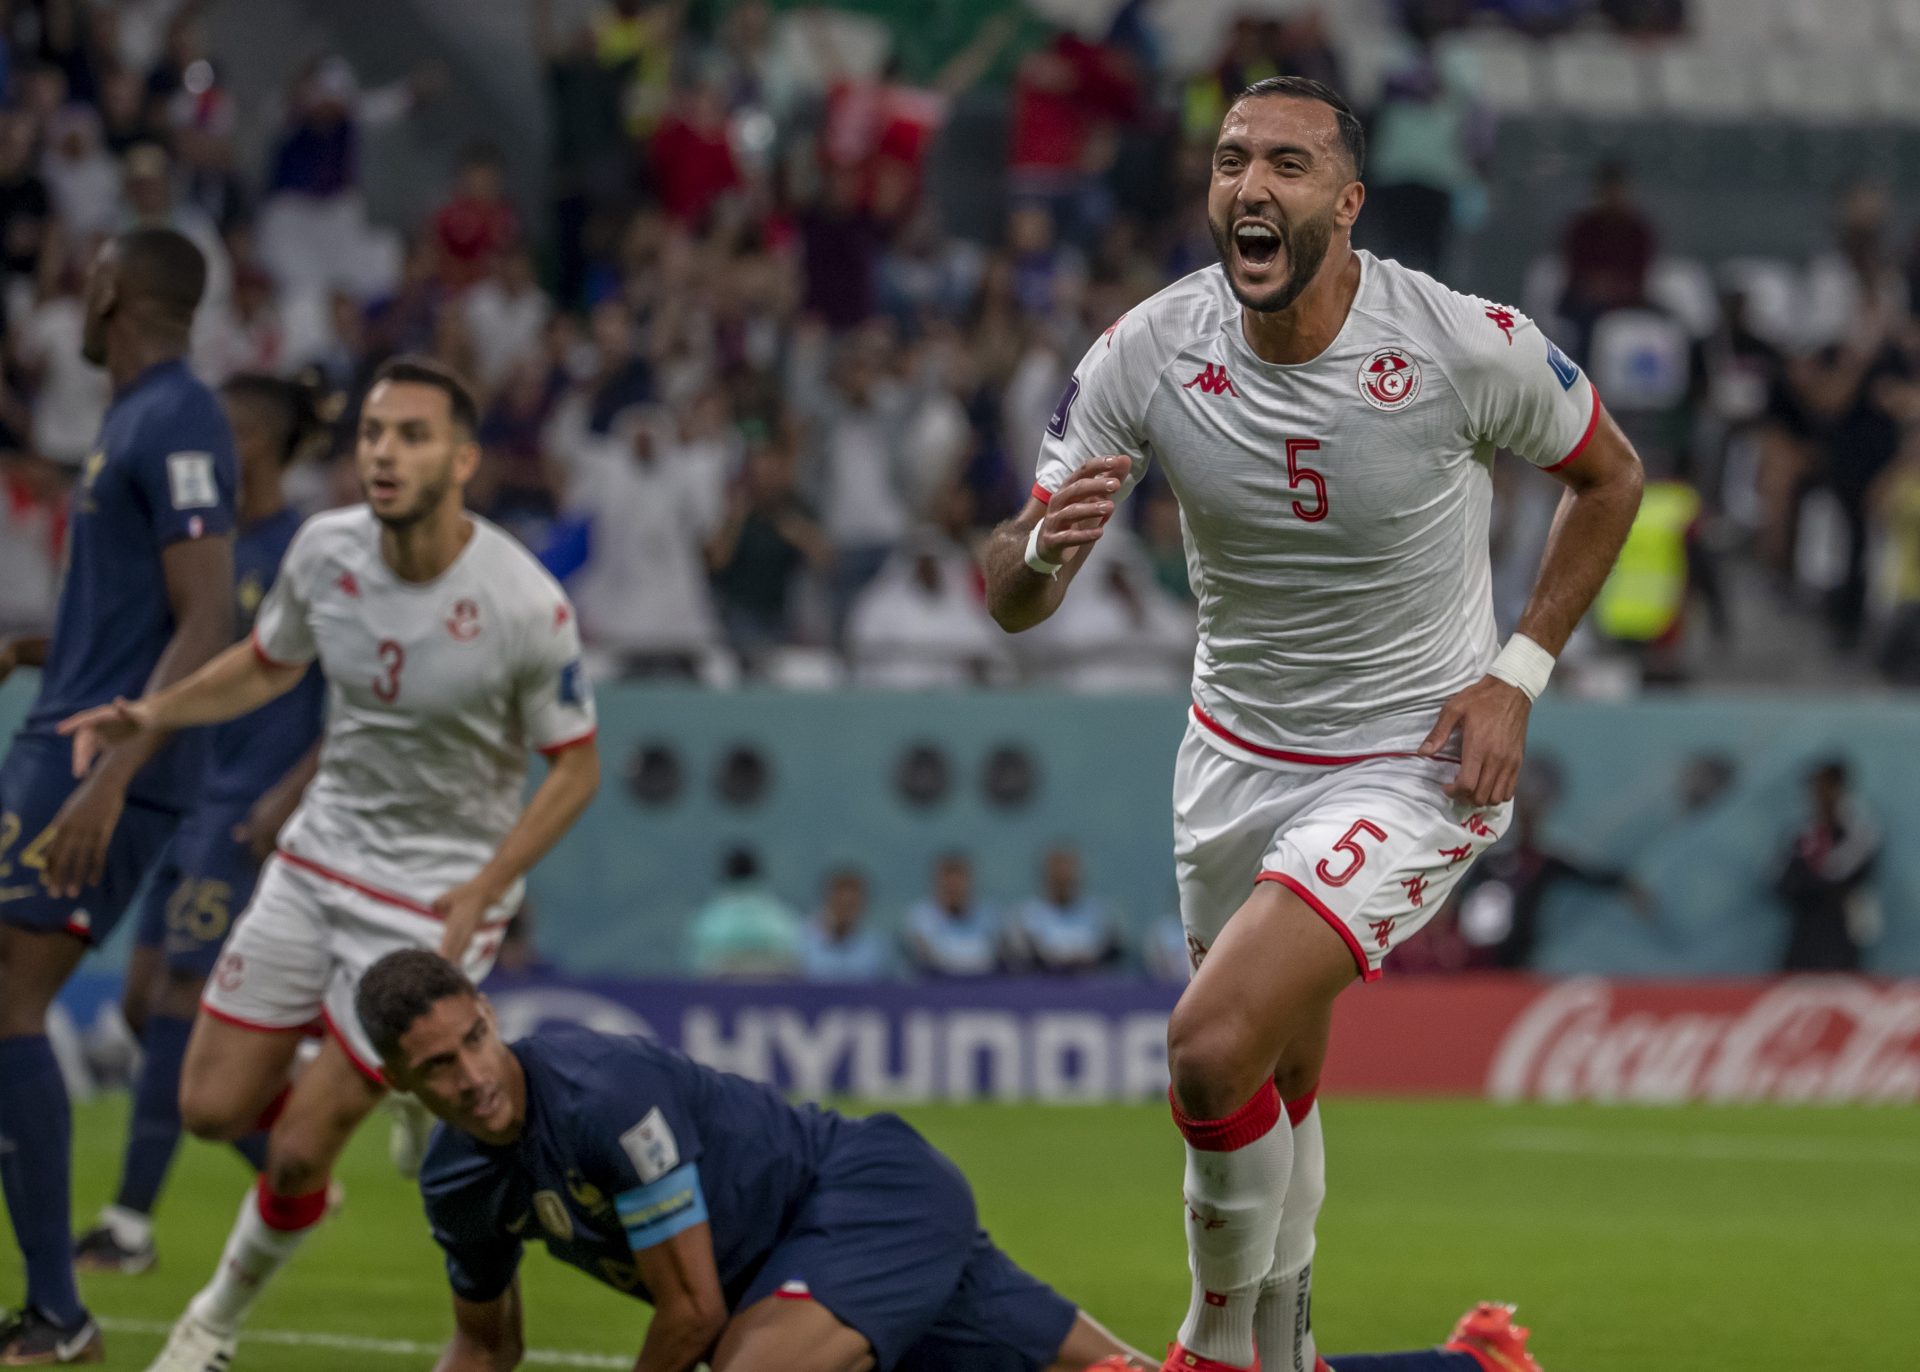 Jogadores da Tunísia durante comemoração do gol - Foto: Juan Antonio Sánches/ Foto Arena/ Estadão Conteúdo